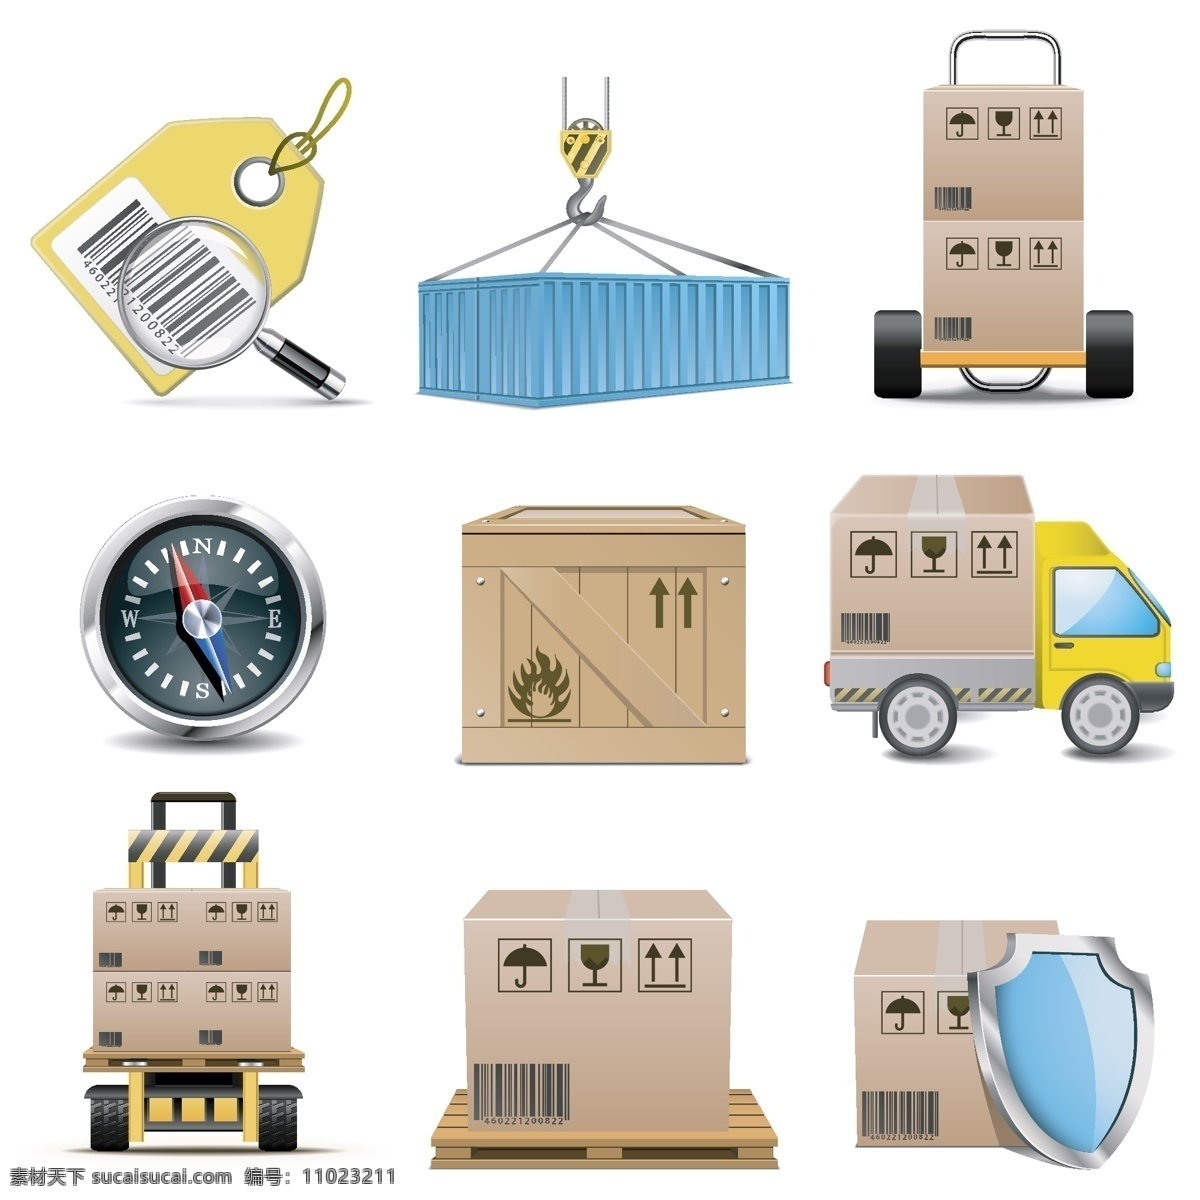 货运物流图标 货运 物流 图标 模板下载 集装箱 纸箱 货车 物流运输 盾牌 指南针 交通工具 现代科技 矢量素材 白色